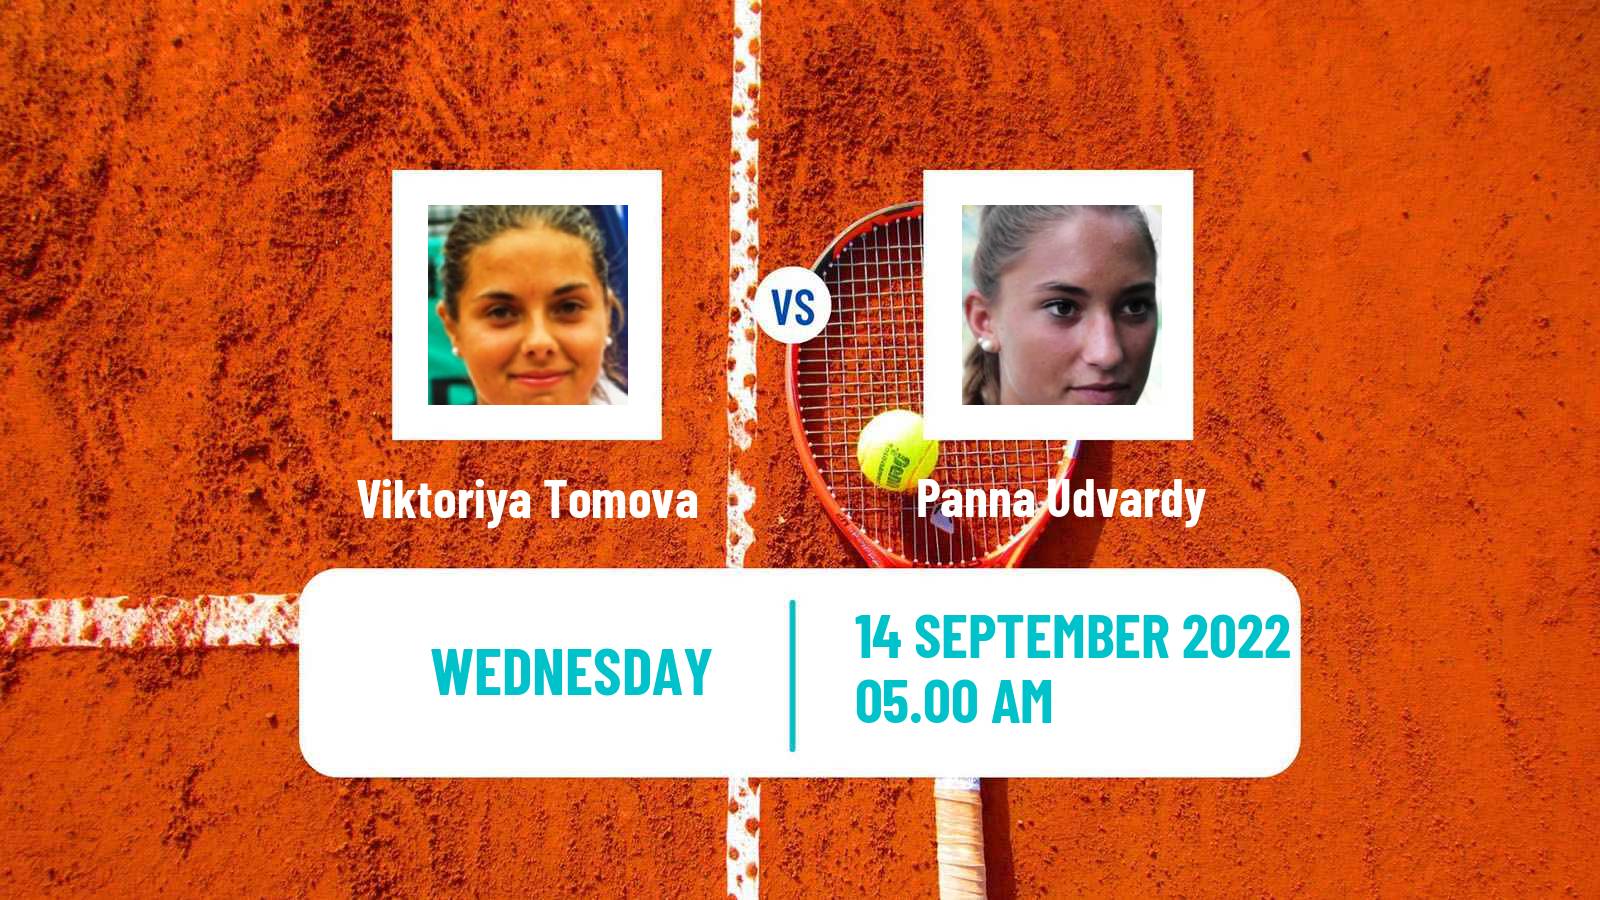 Tennis ATP Challenger Viktoriya Tomova - Panna Udvardy